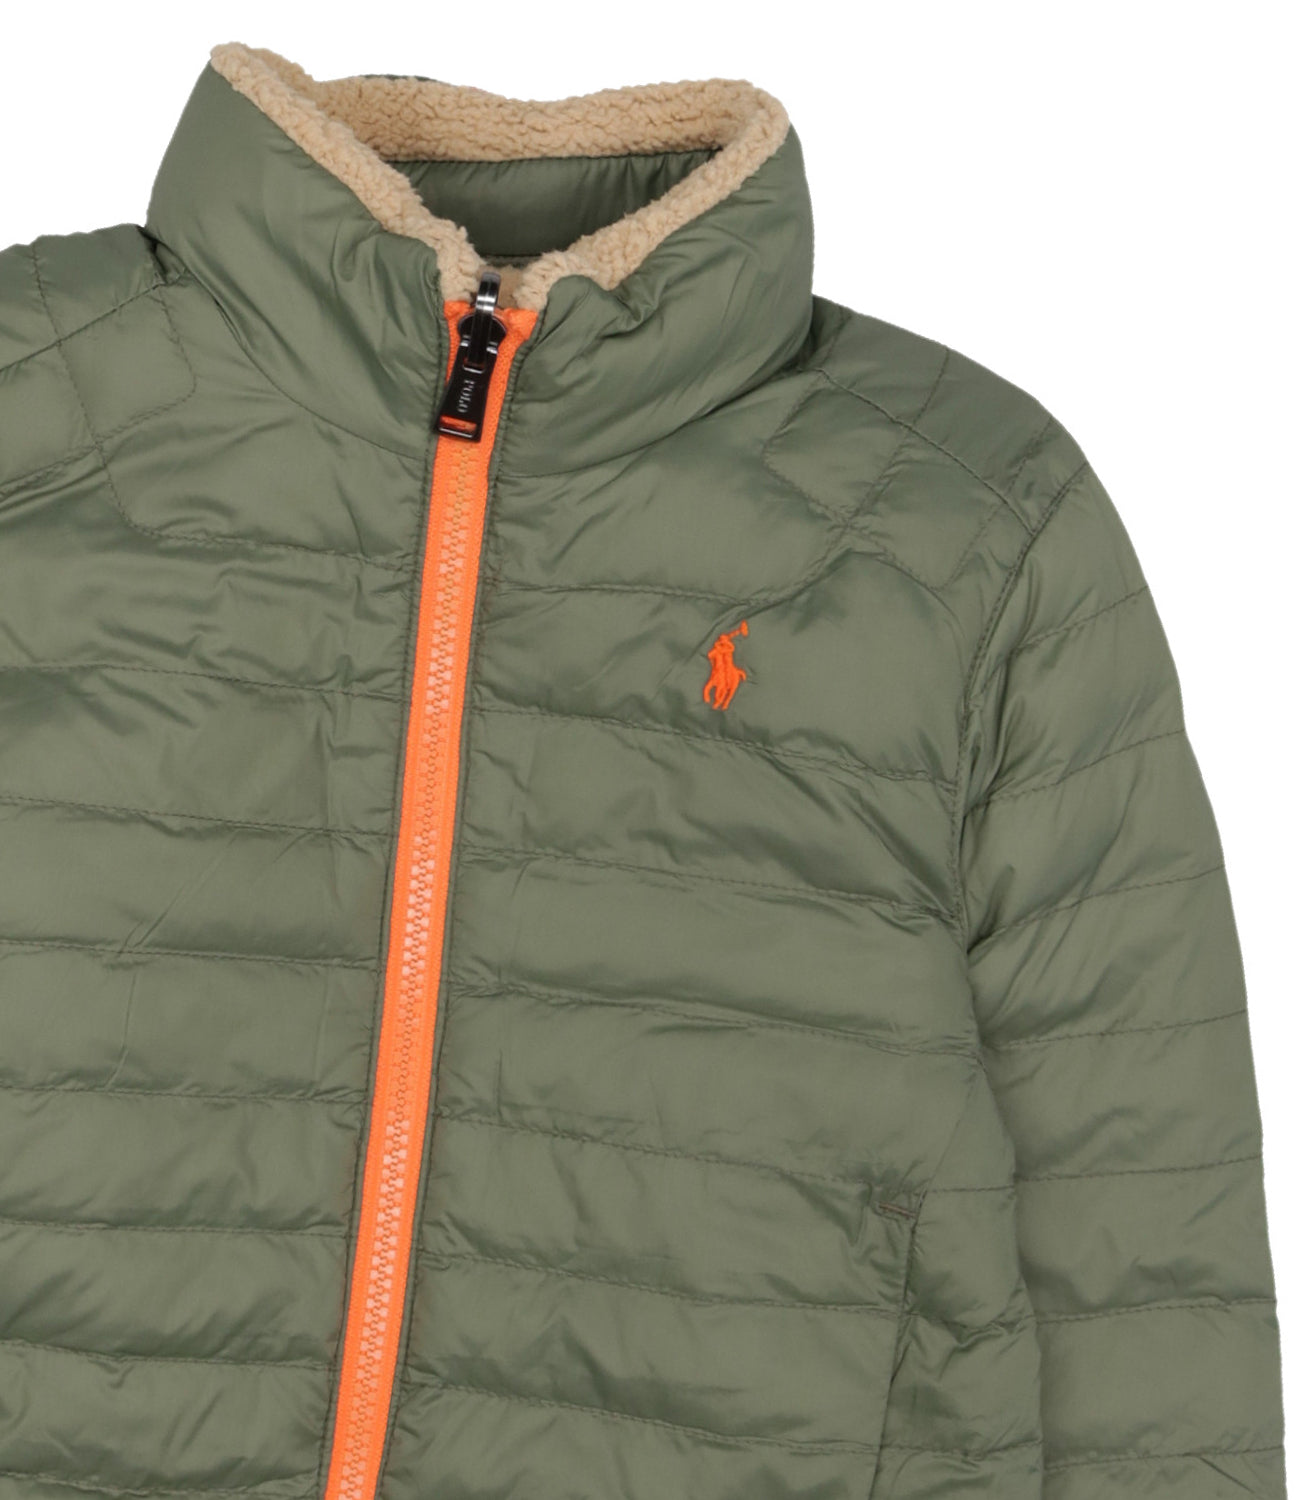 Ralph Lauren Childrenswear | Beige and Green Jacket